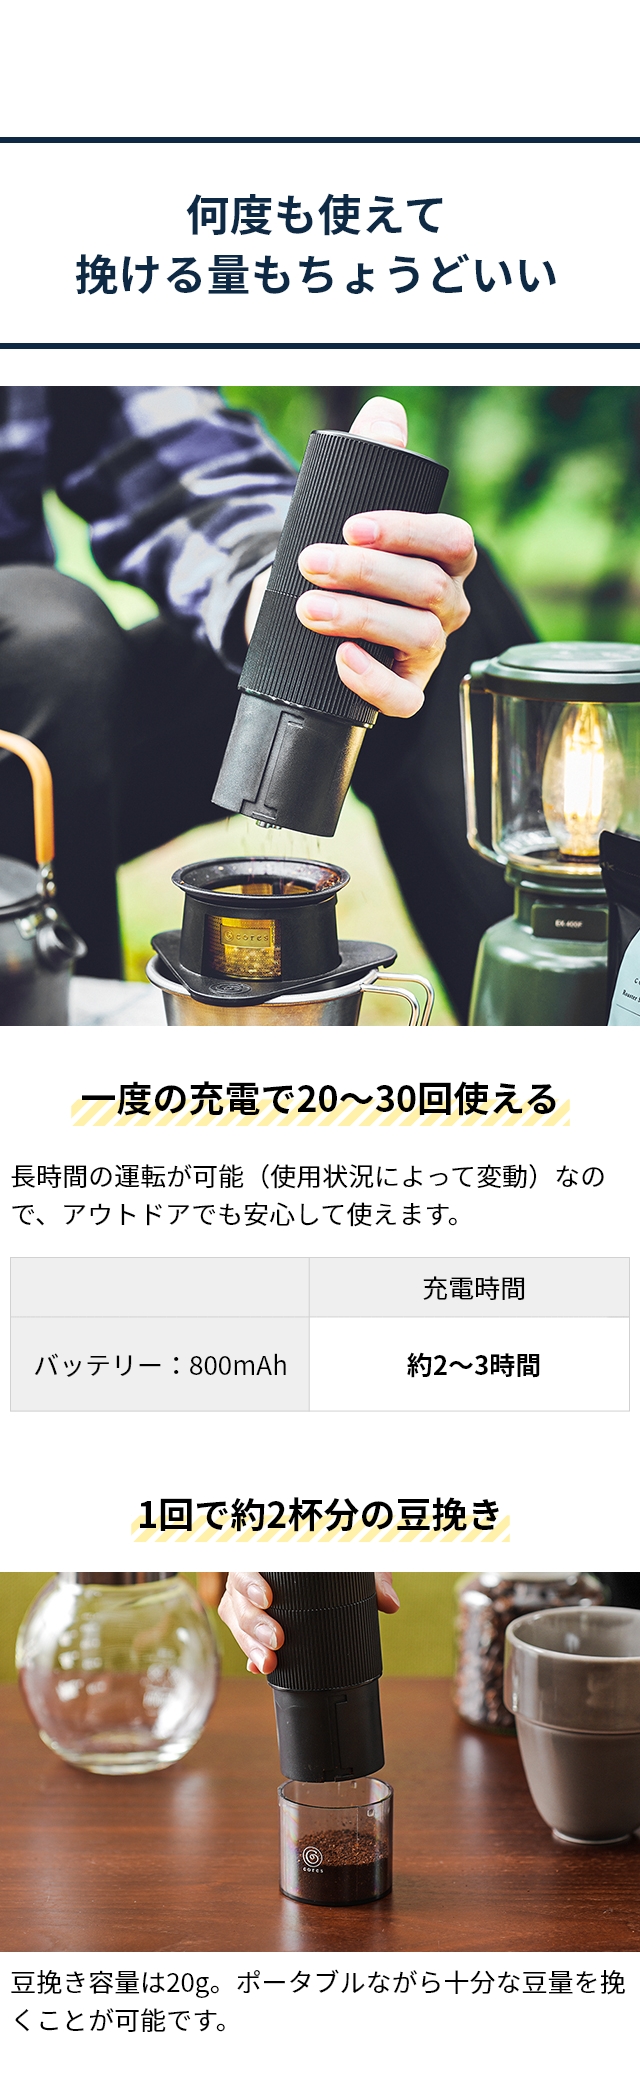 コレス 【4つから選べる特典】 コーヒーミル 電動 ポータブルコーヒー